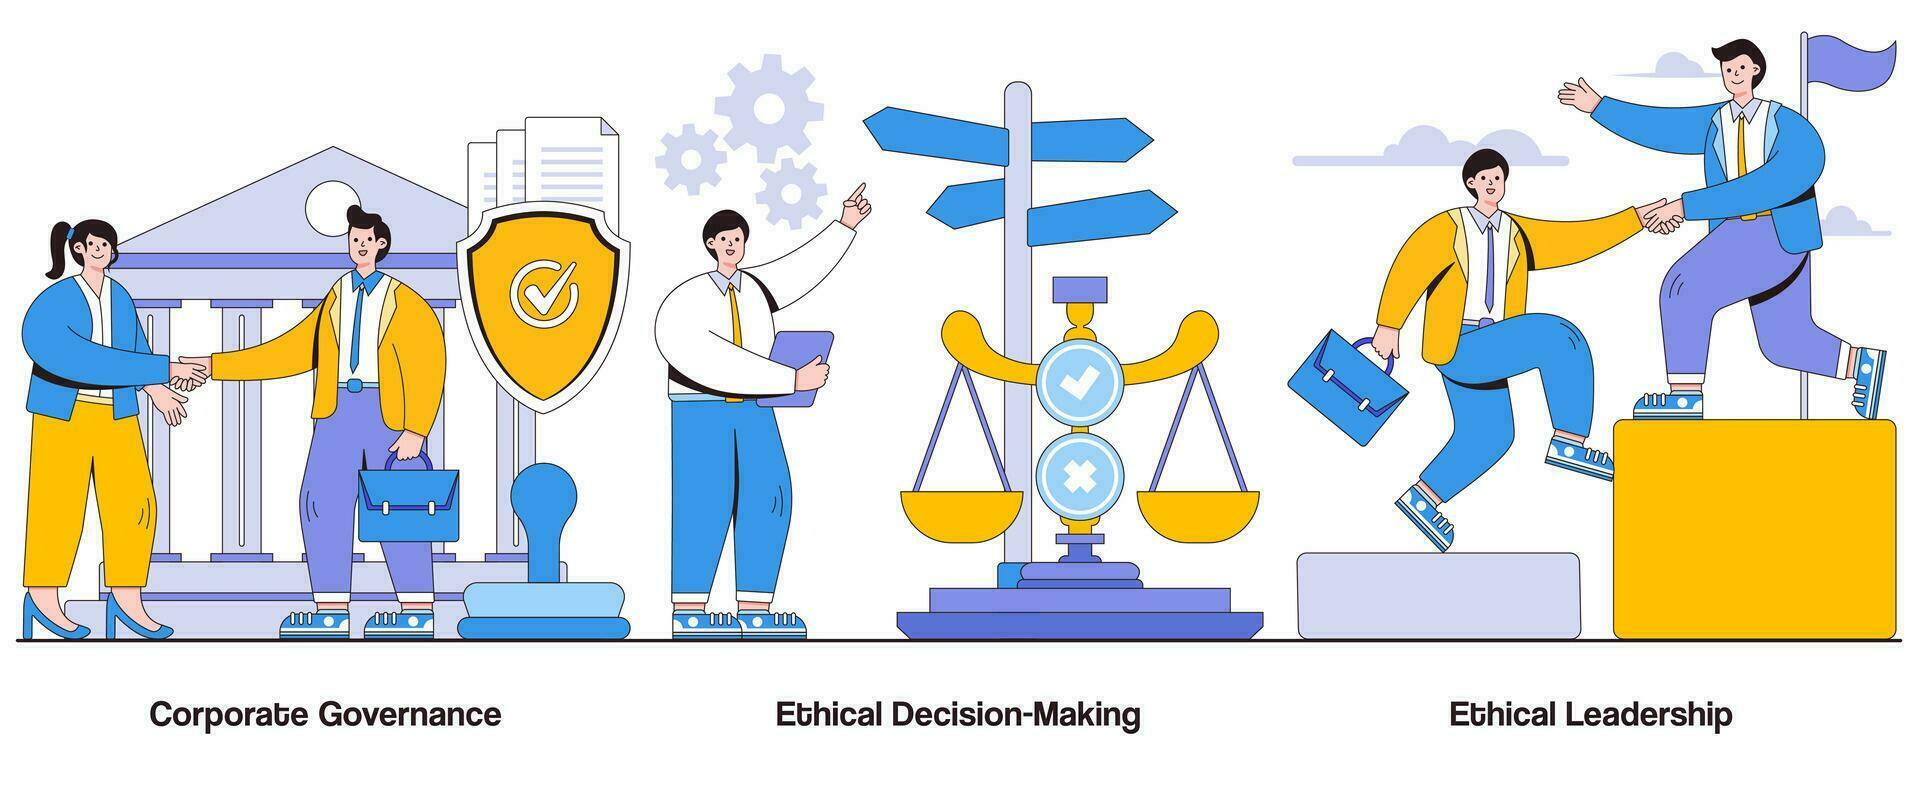 företags- styrning, etisk beslutsfattande, etisk ledarskap begrepp med karaktär. företags- ansvar abstrakt vektor illustration uppsättning. genomskinlighet, styrelse tillsyn, ansvarighet